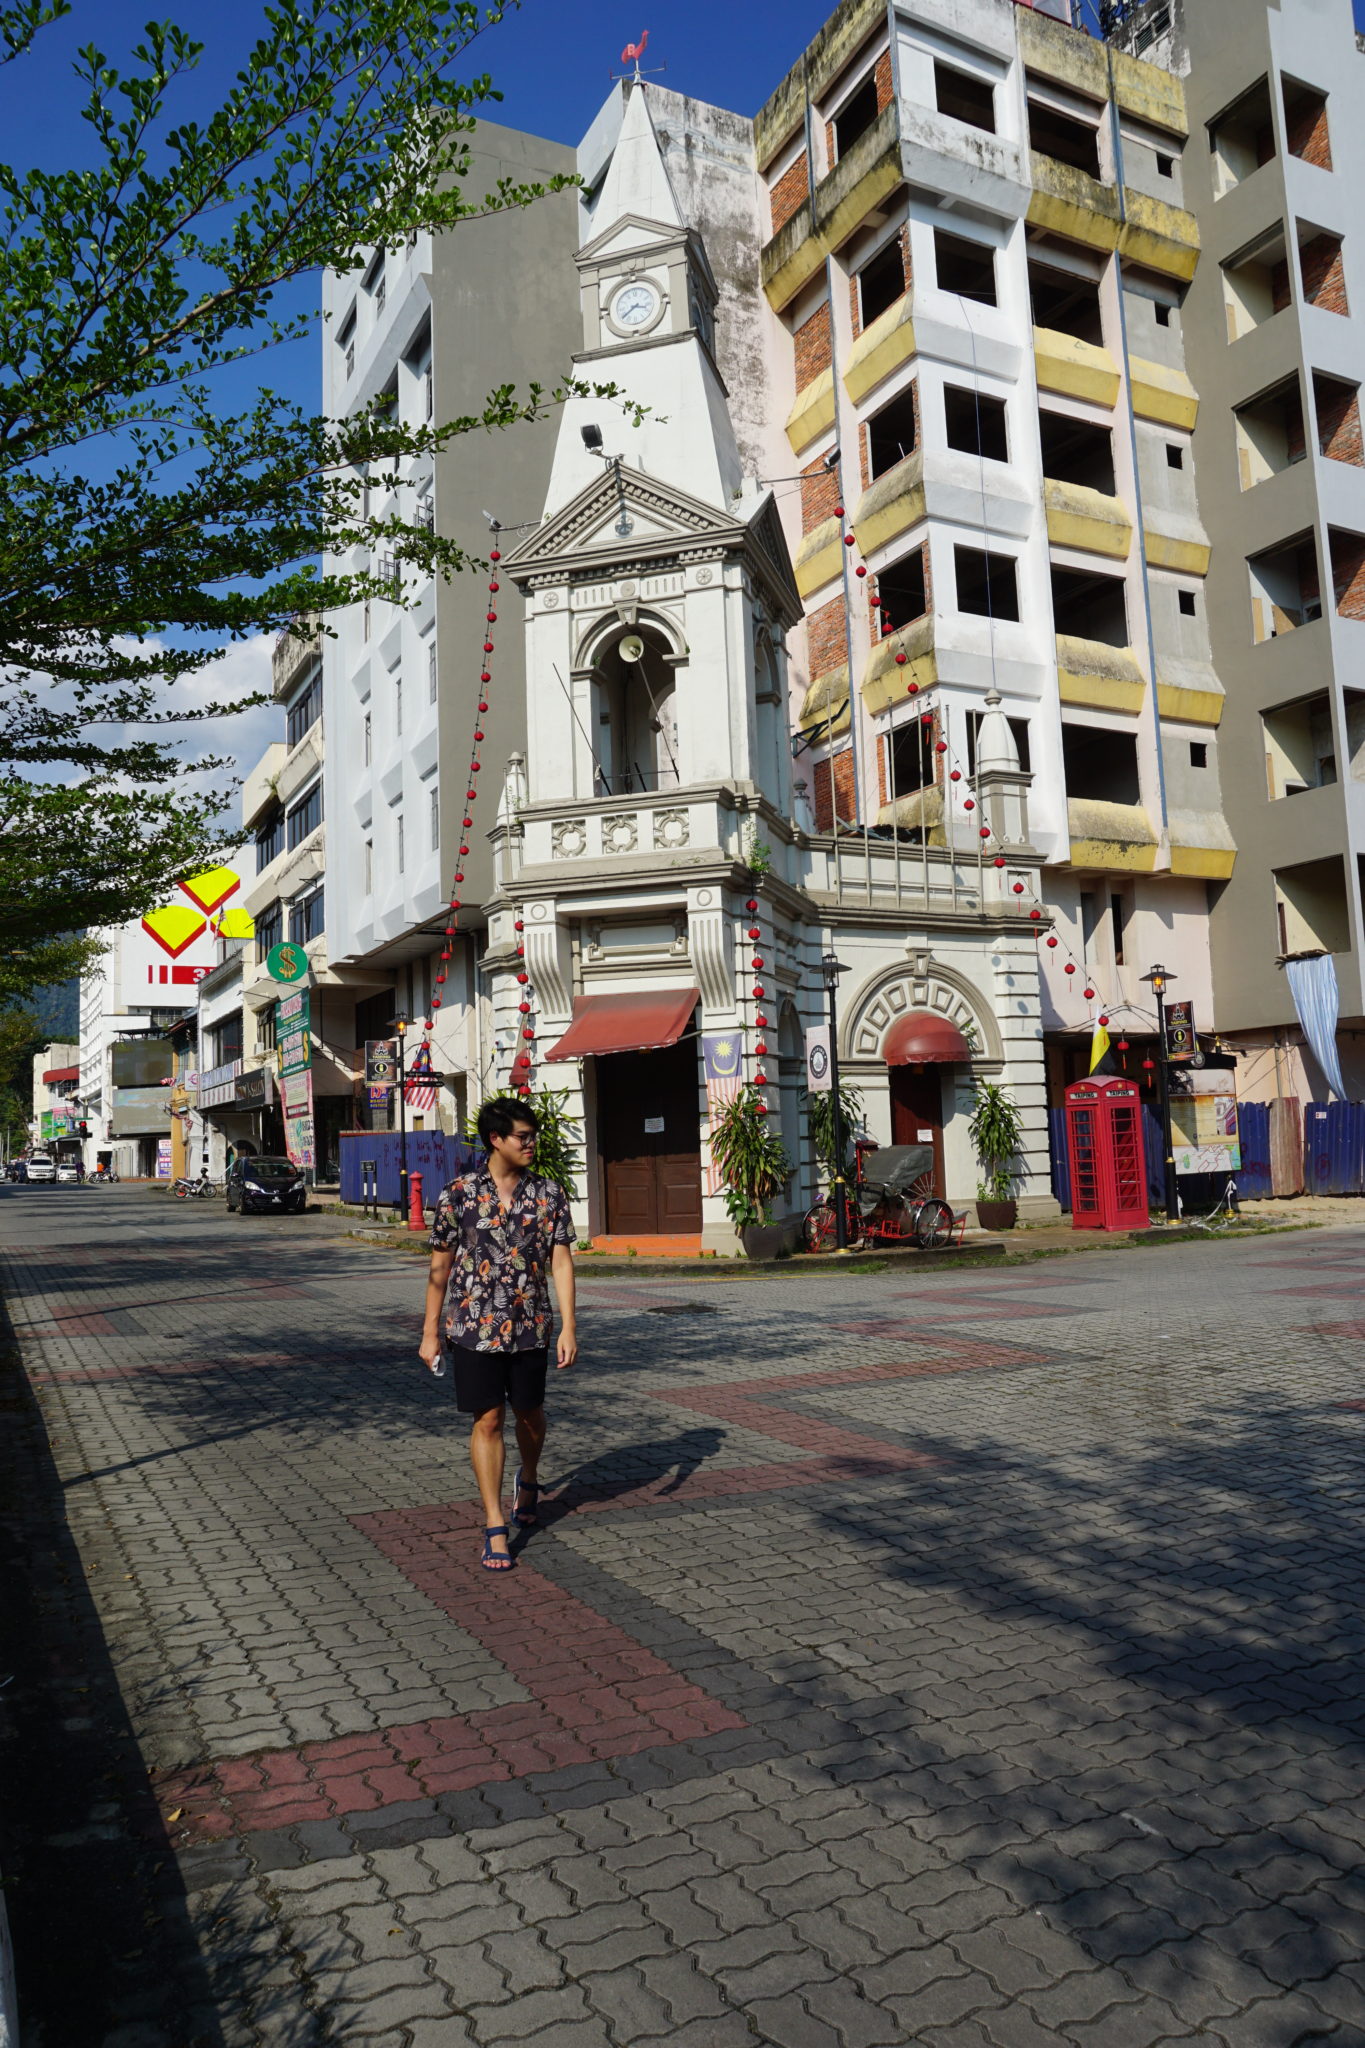 Taiping Clock Tower